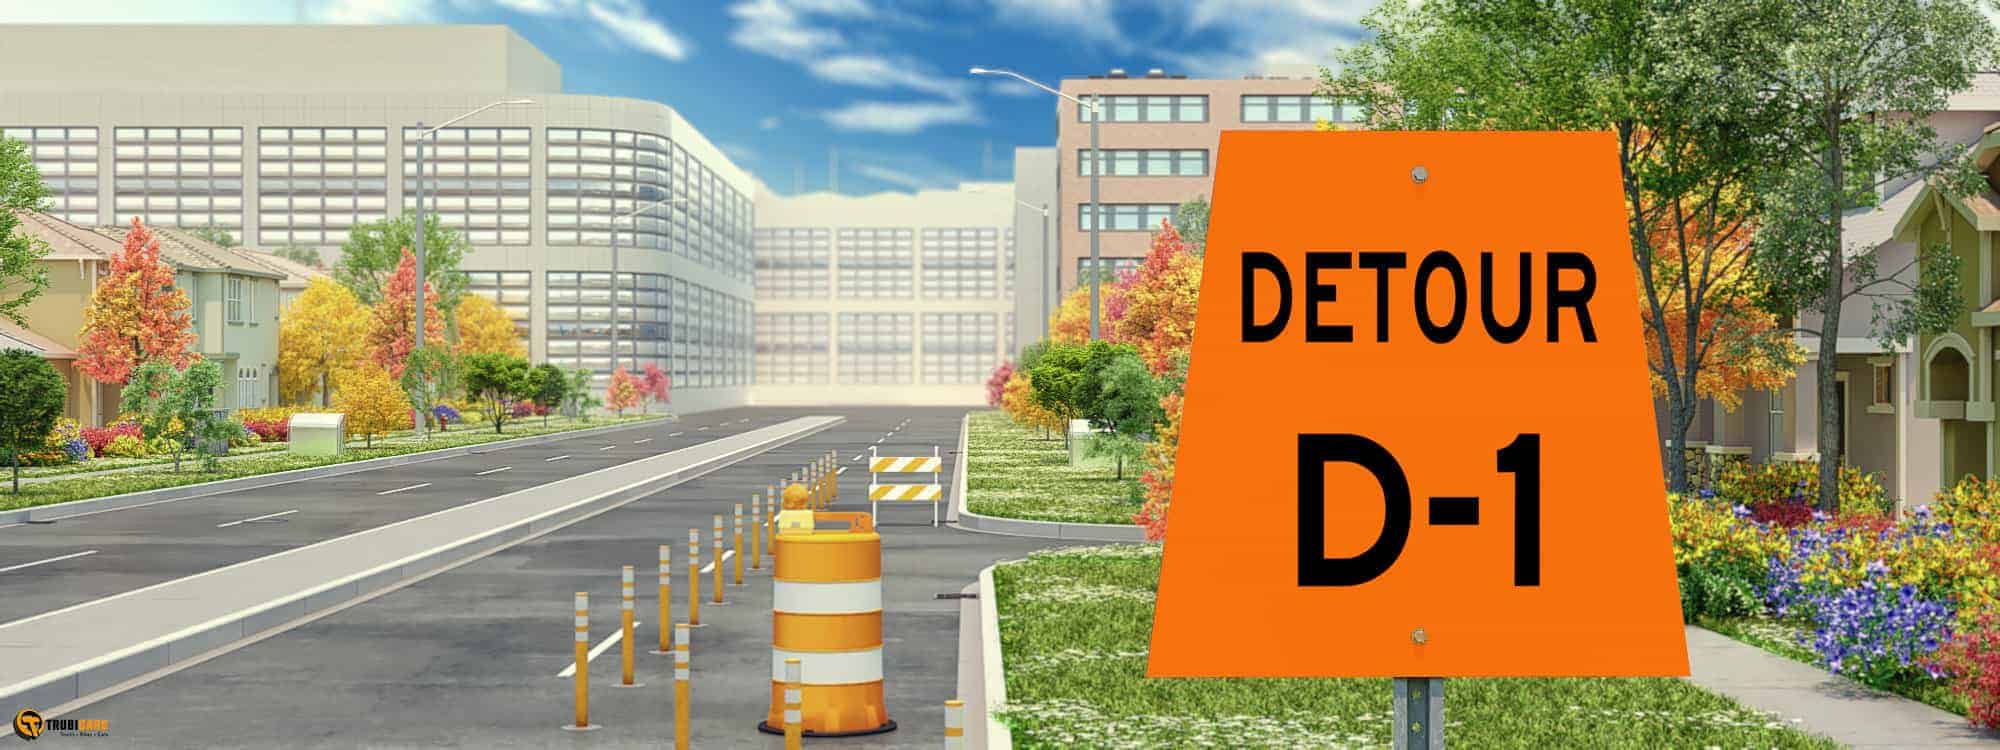 Detour D1